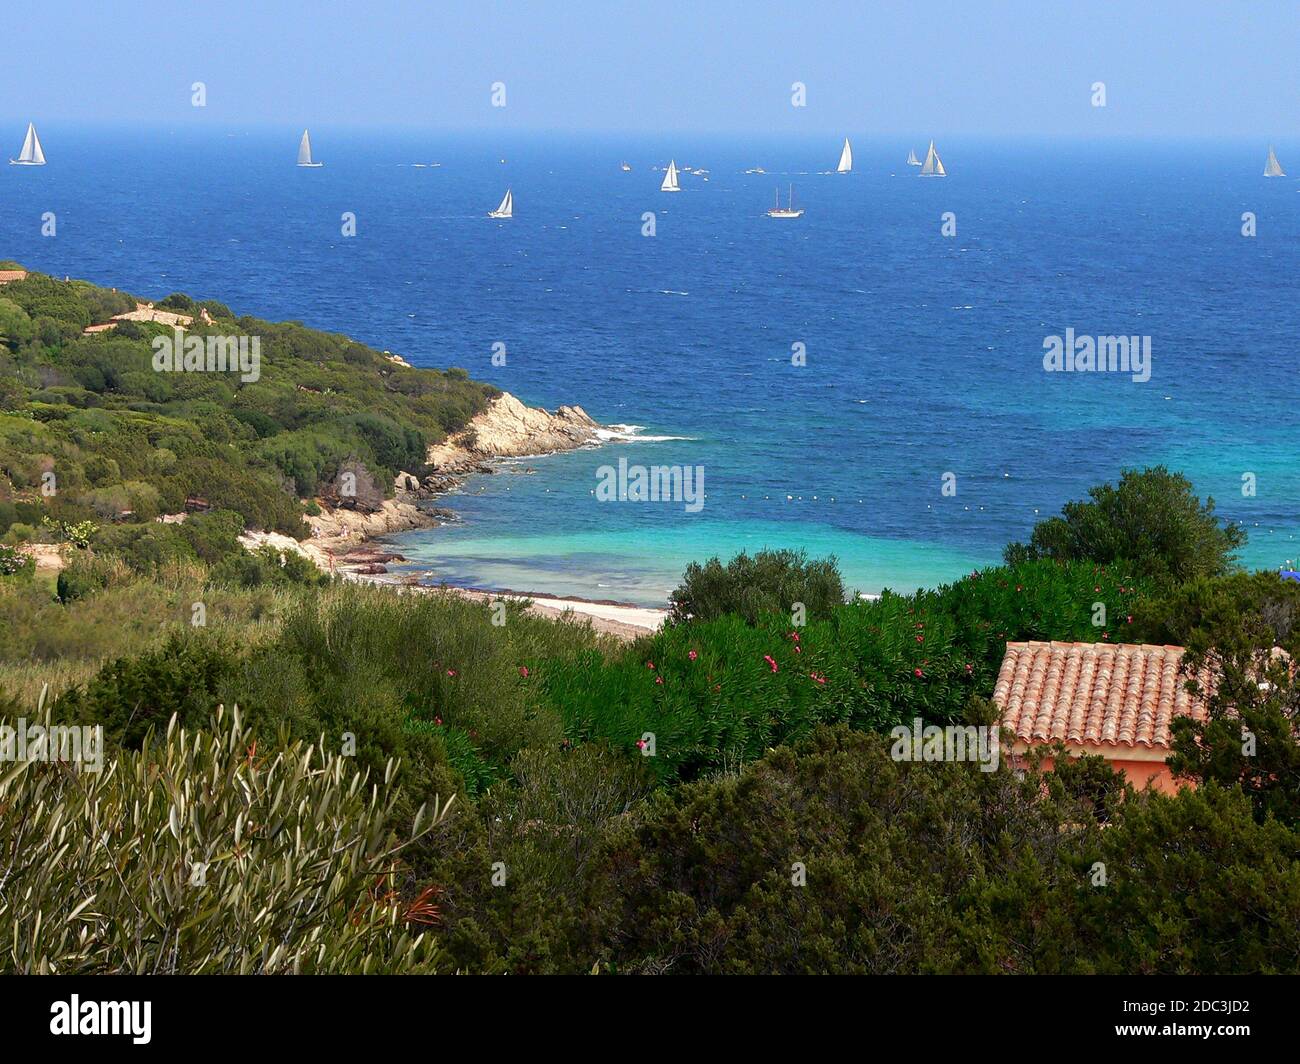 Cala Granu beach, Costa Smeralda, Sardinia, Italy Stock Photo - Alamy